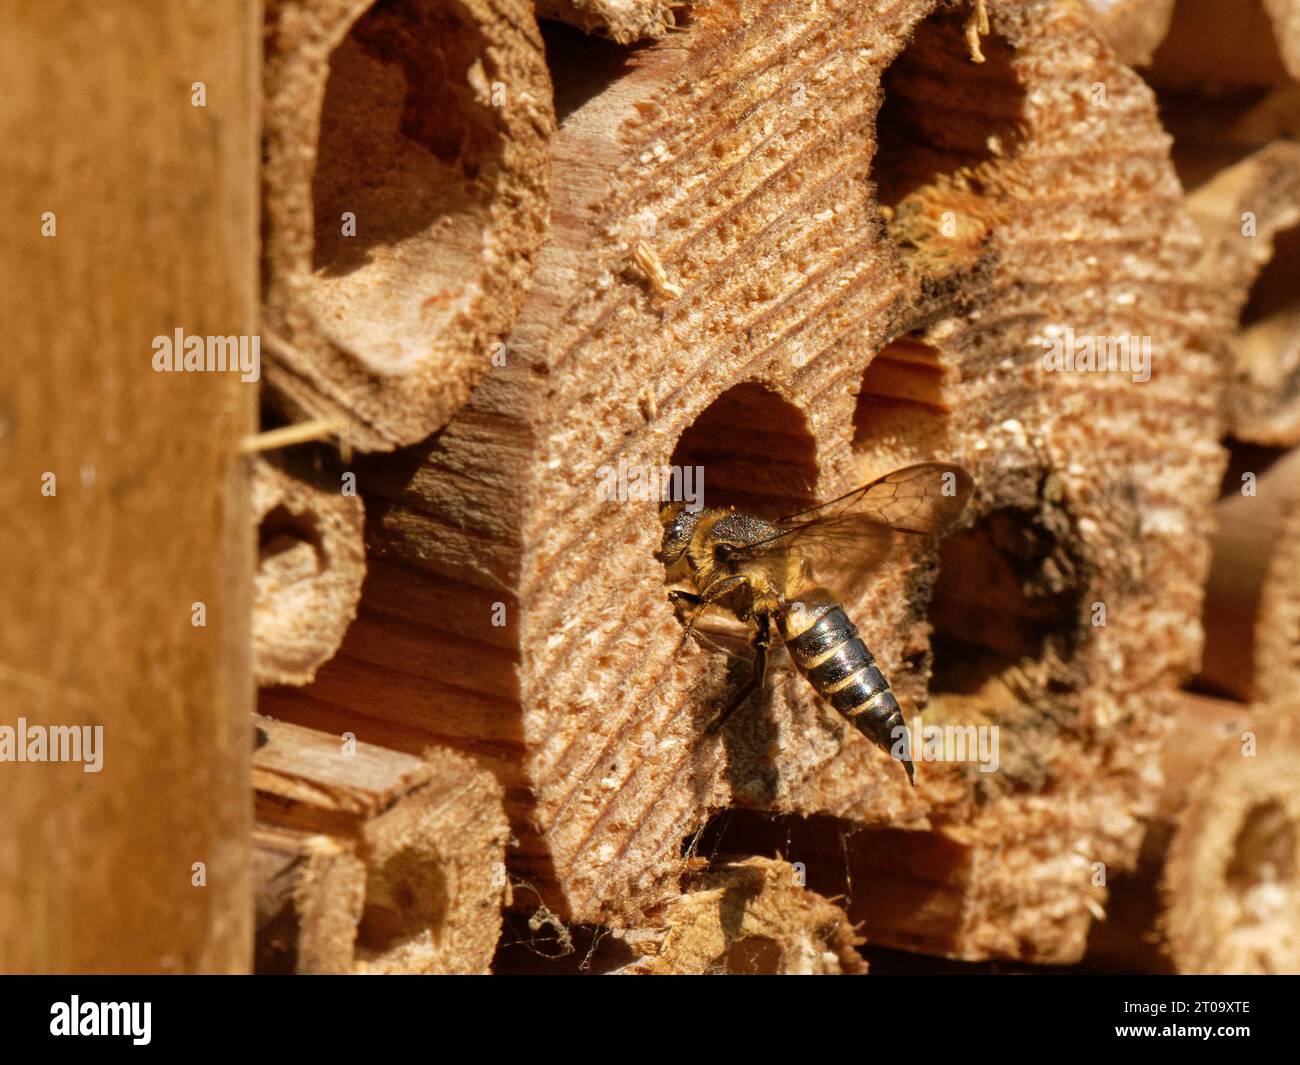 Api dalla coda tagliente e scintillanti e ventilate / api cuculo (Coelioxys inermis) in visita a un hotel di insetti, entrando in un nido di api Leafcutter per parassitalizzarlo, Regno Unito. Foto Stock